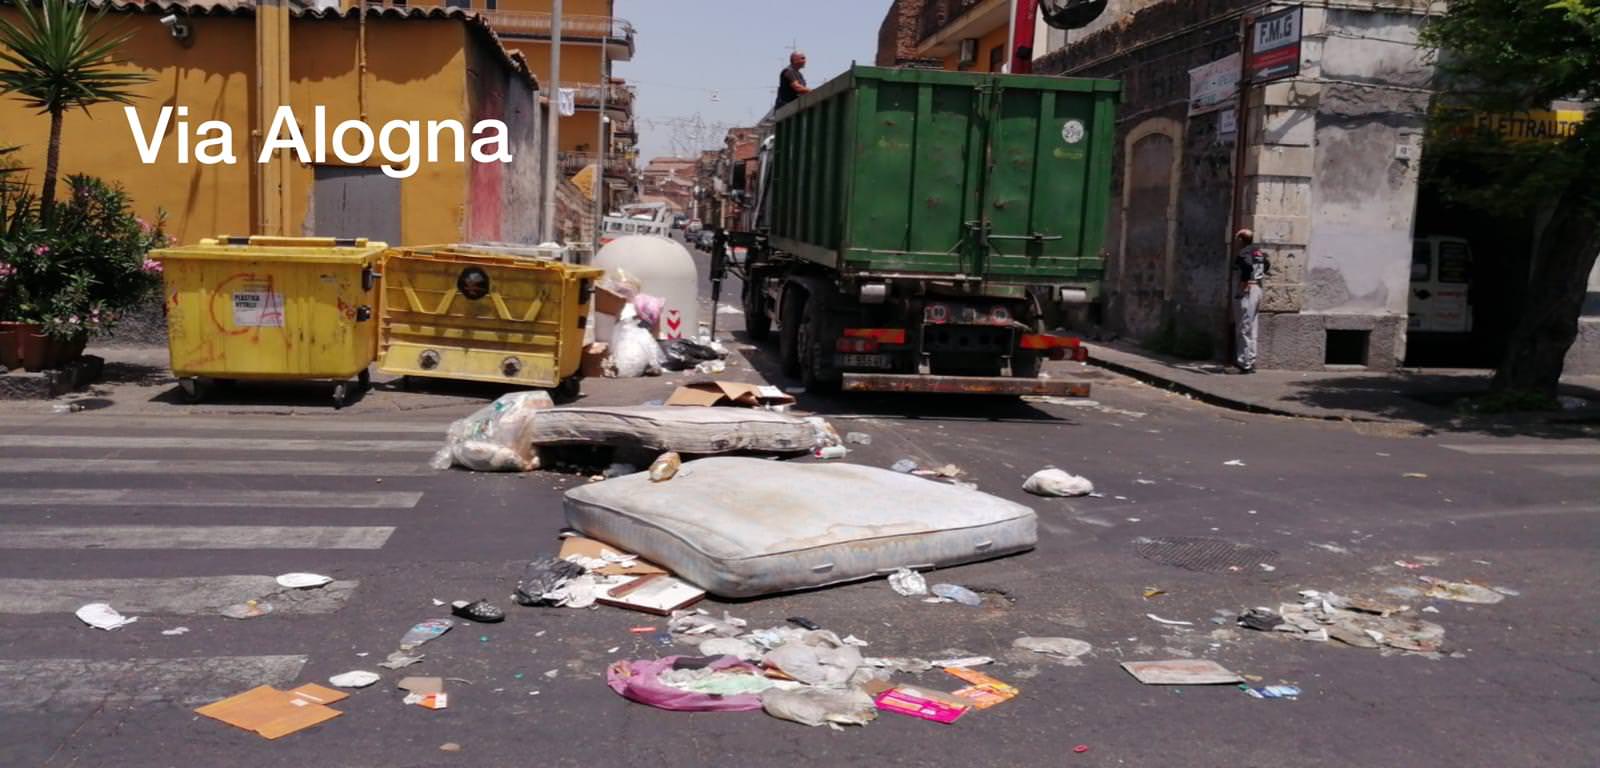 Raccolta rifiuti a Catania, la Dusty si scusa per i disagi dell’ultimo periodo: “Torniamo a pieno regime”